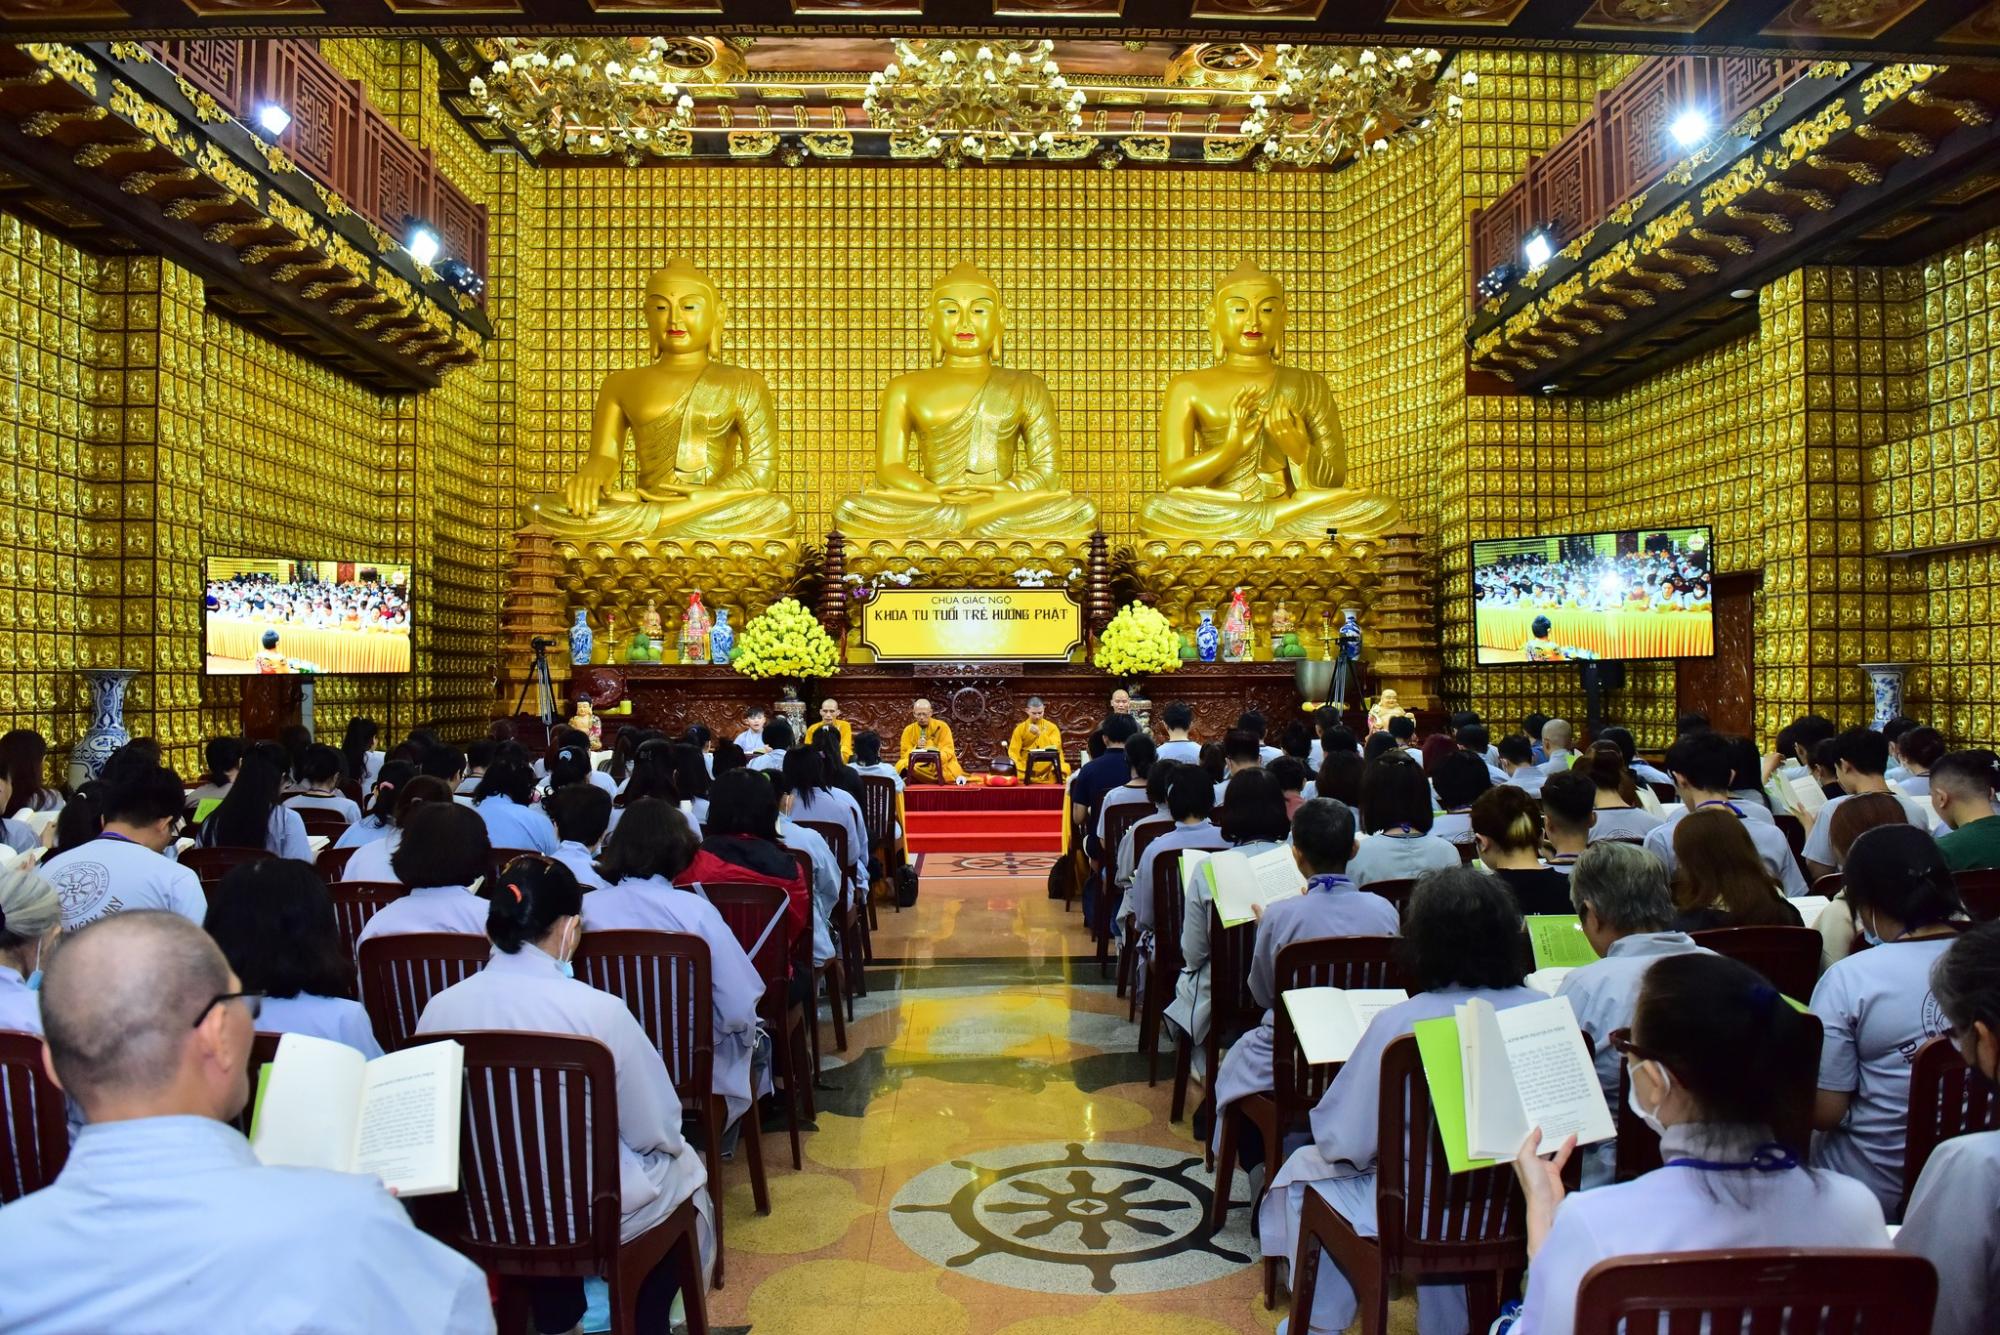 Cuối tuần ý nghĩa cùng khóa tu Tuổi trẻ hướng Phật chùa Giác Ngộ